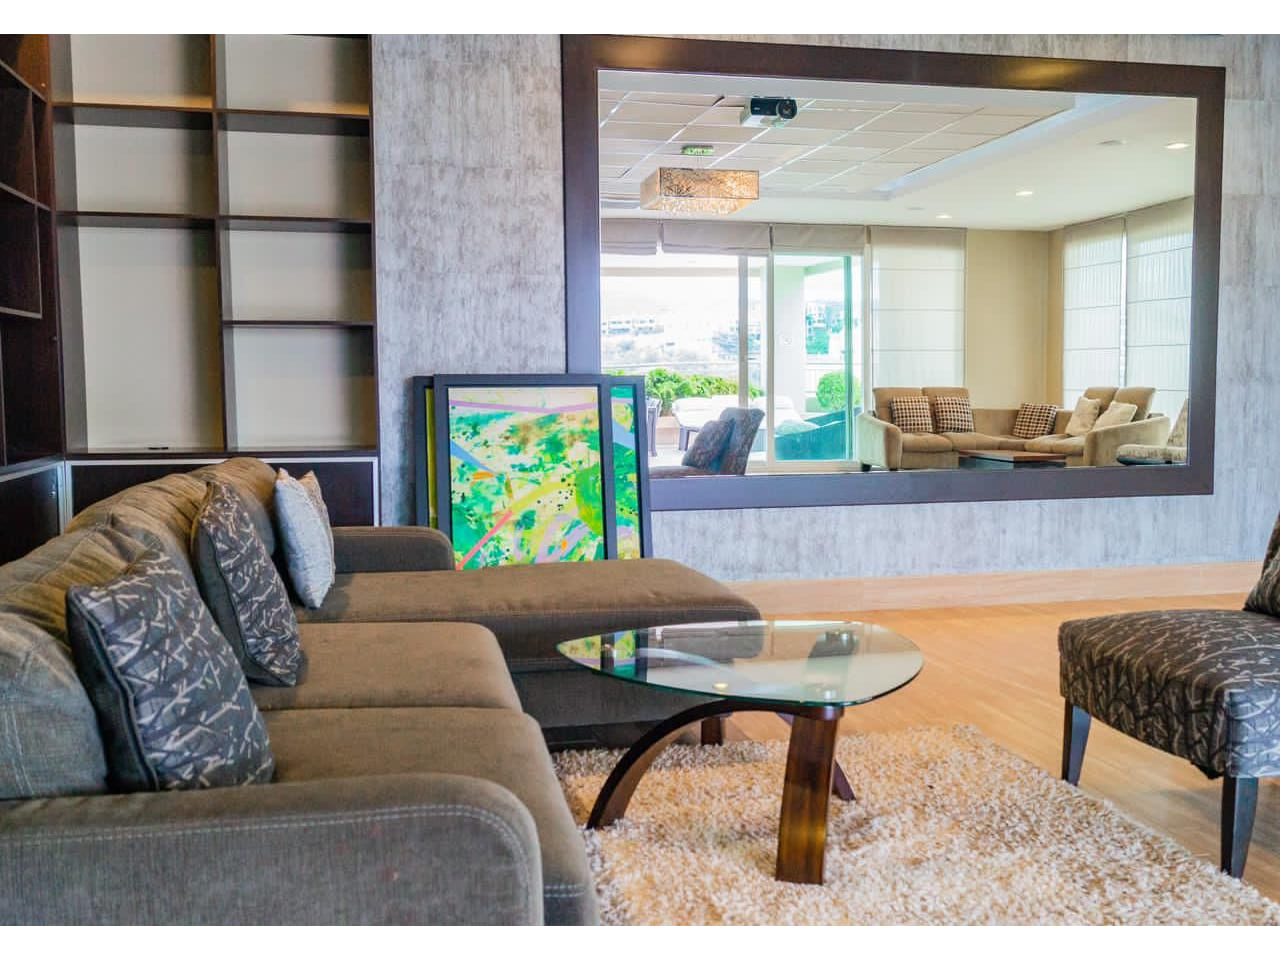 Área social lujosa con muebles de color café, amplio espejo, mesa de cristal con alfombra de peluche color claro.